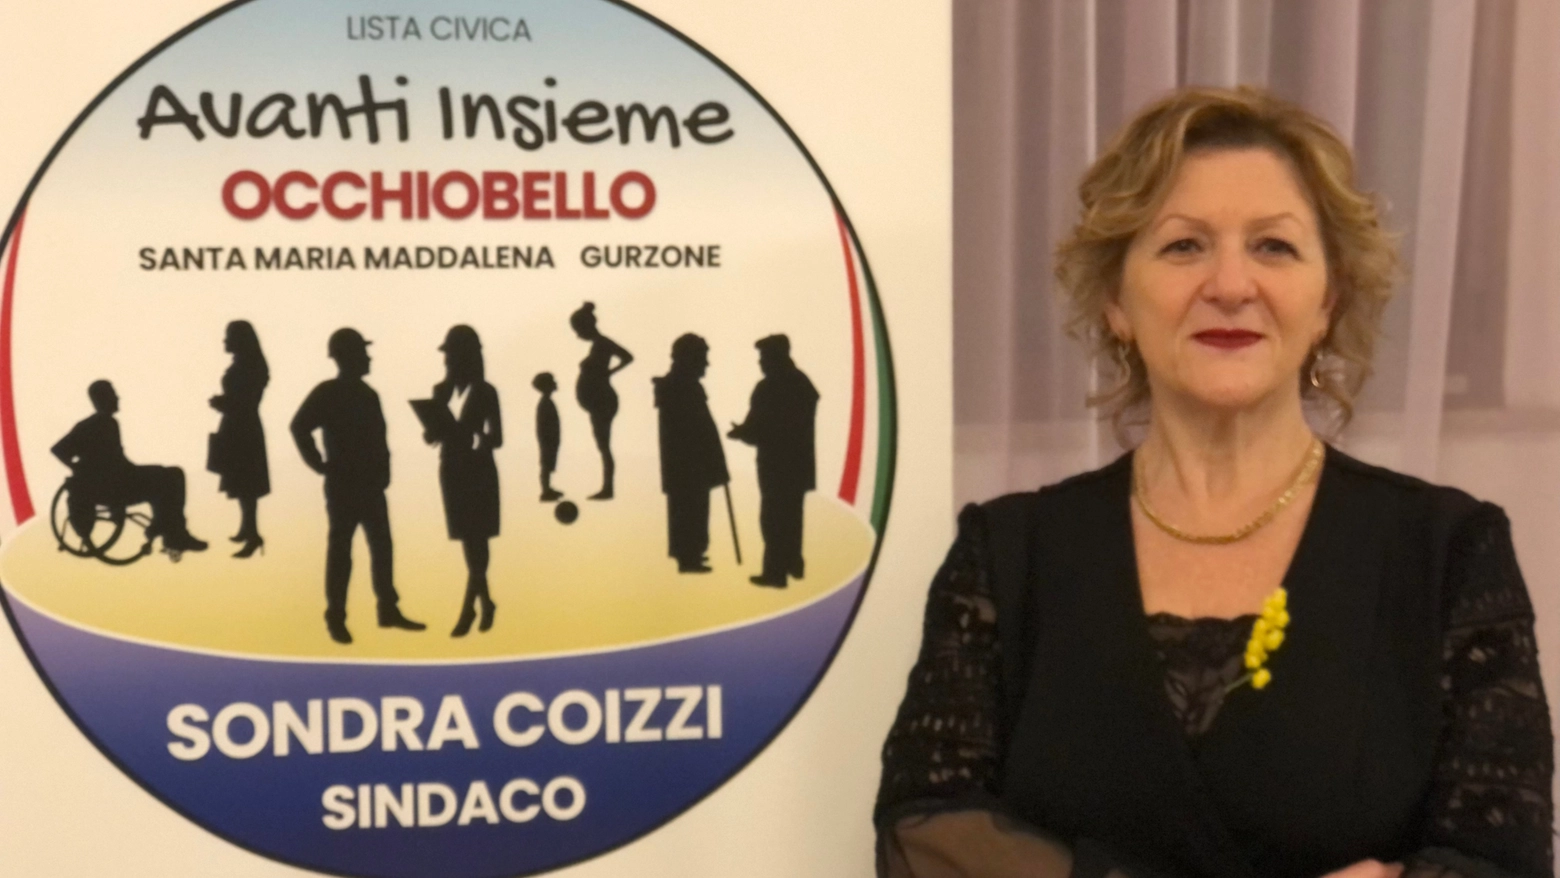 La sindaca uscente Sondra Coizzi si ricandida con una nuova lista civica